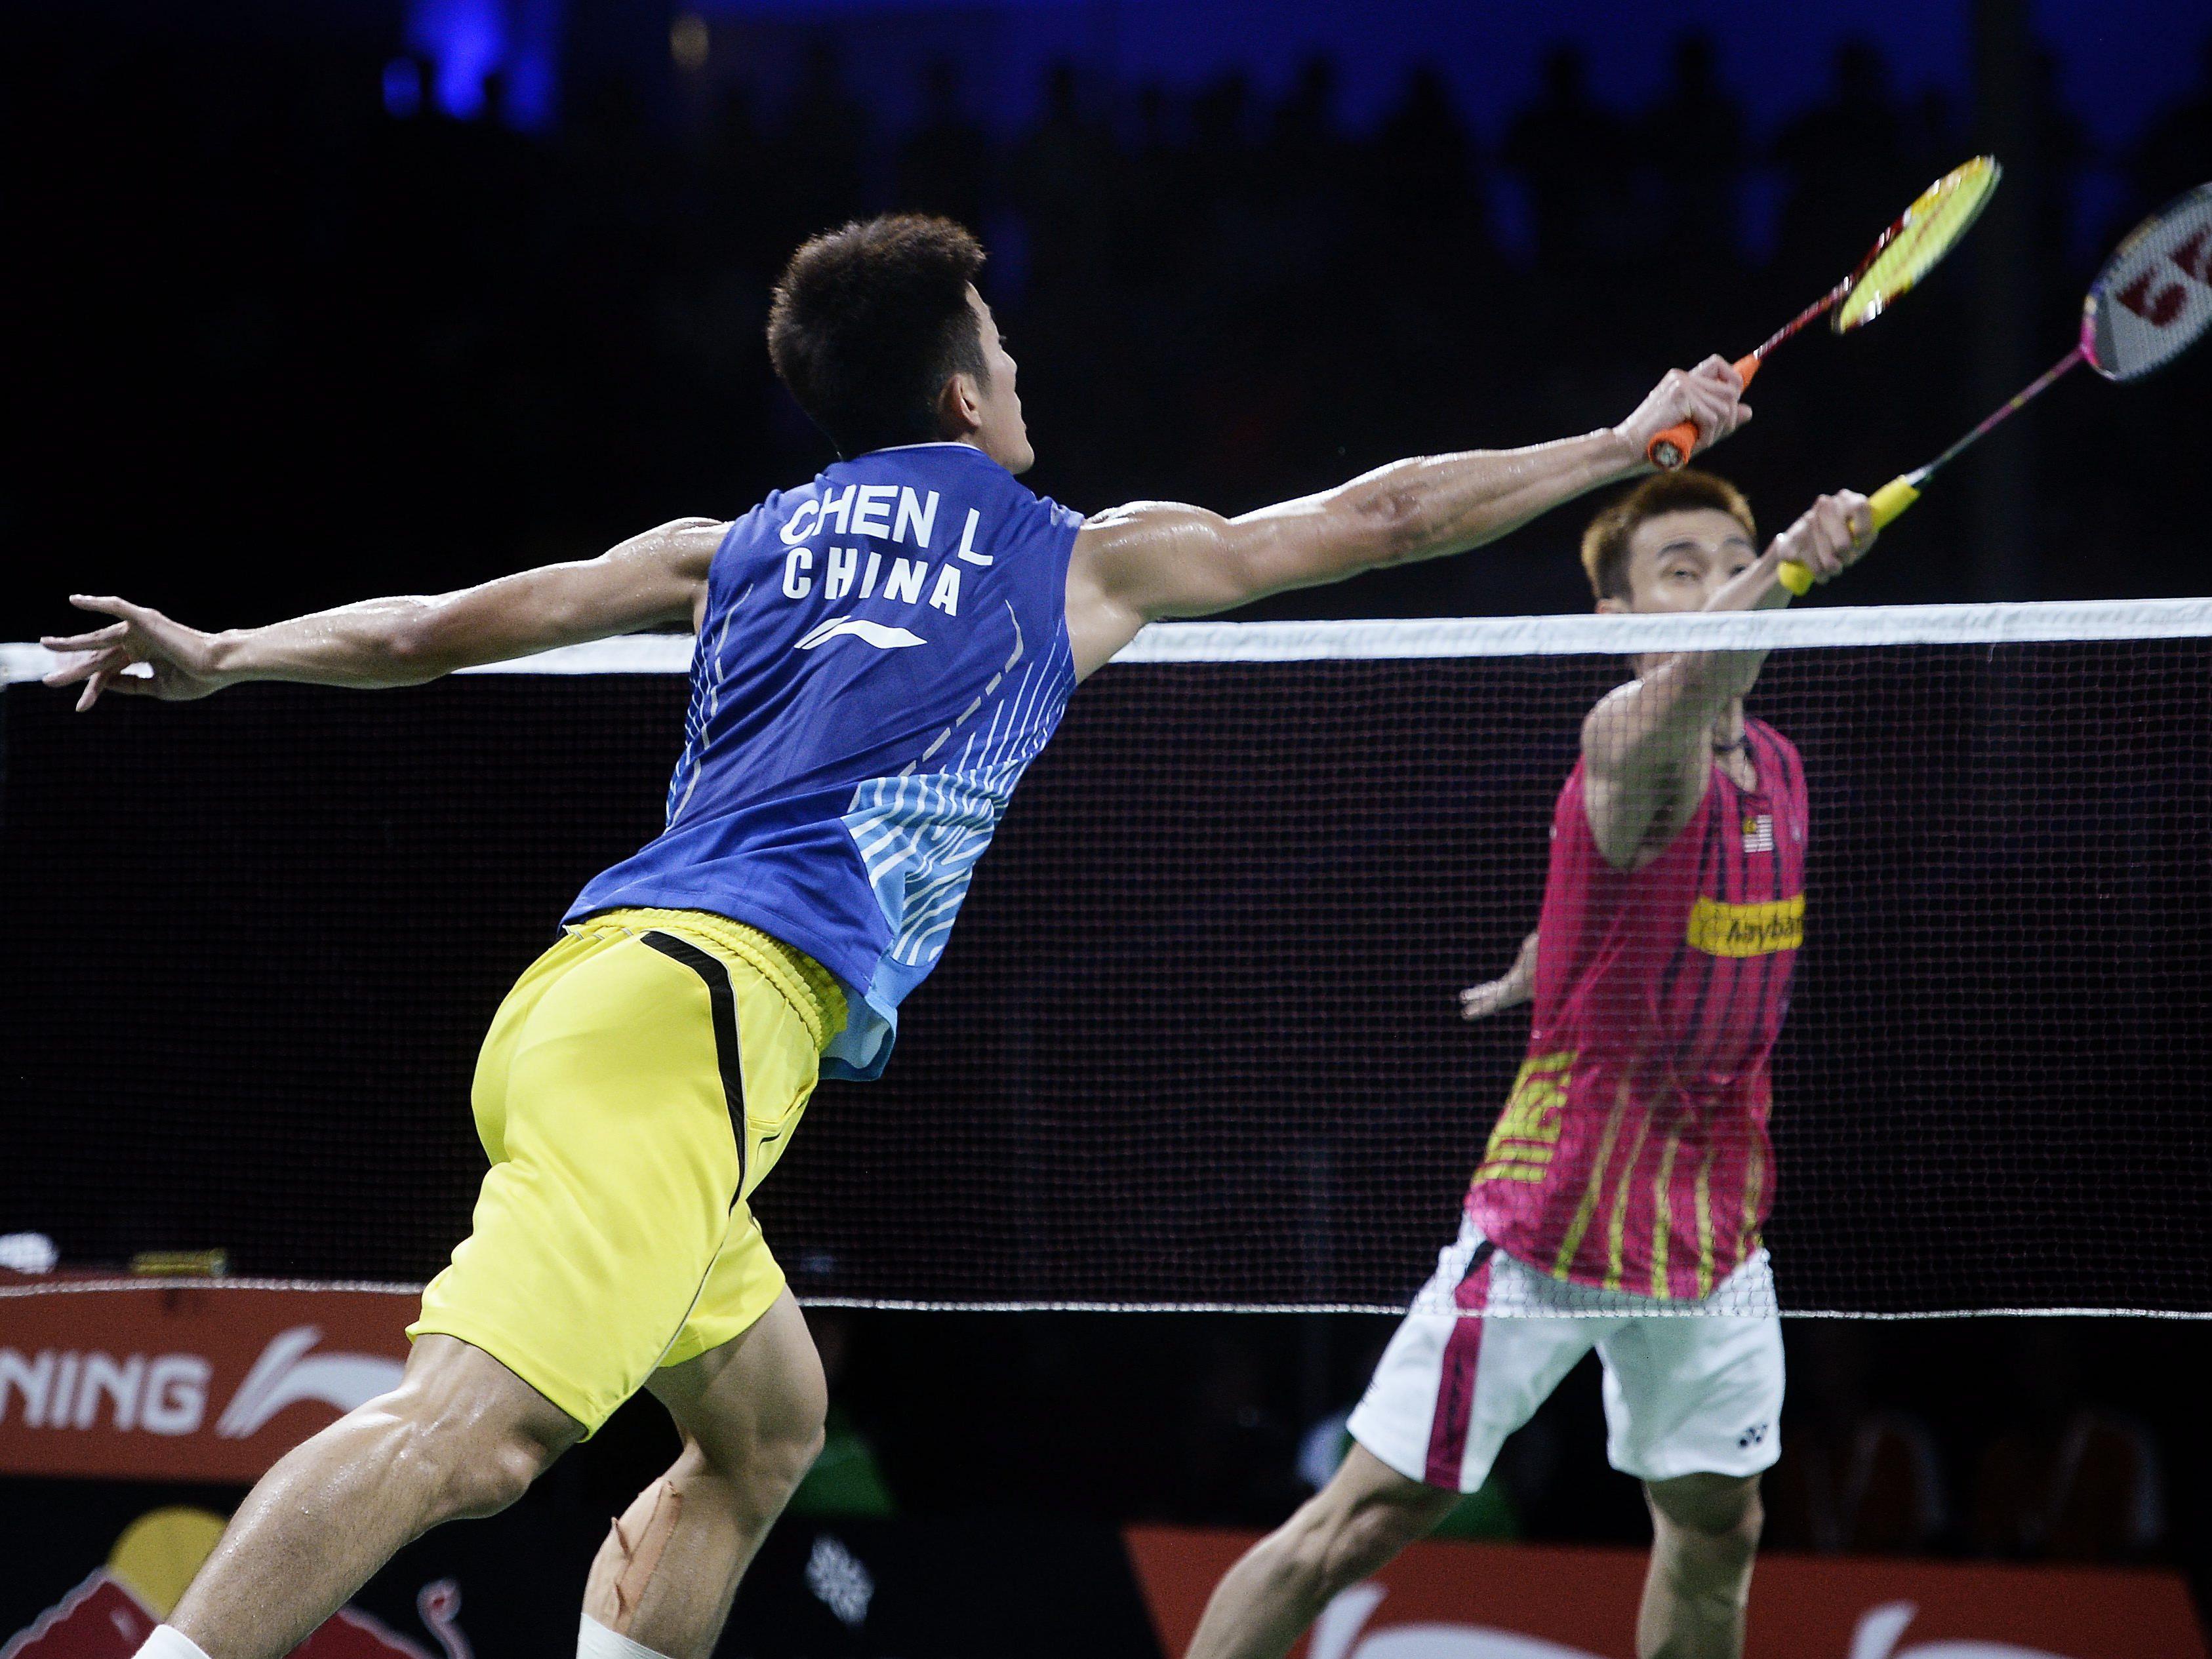 Glück im Unglück für Badminton-Spieler in Vietnam.